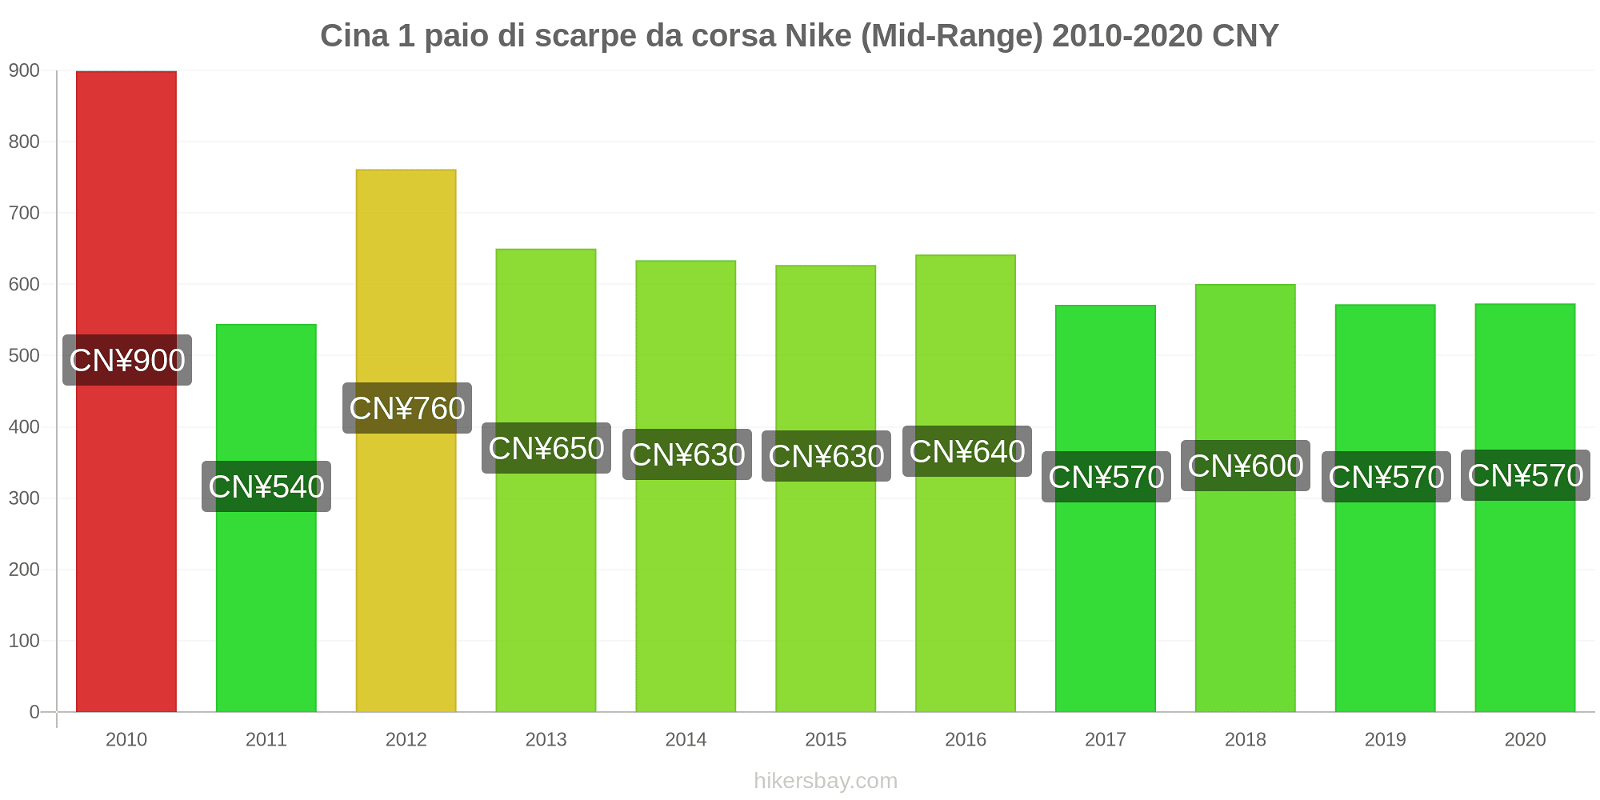 Cina variazioni di prezzo 1 paio di scarpe da corsa Nike (simile) hikersbay.com